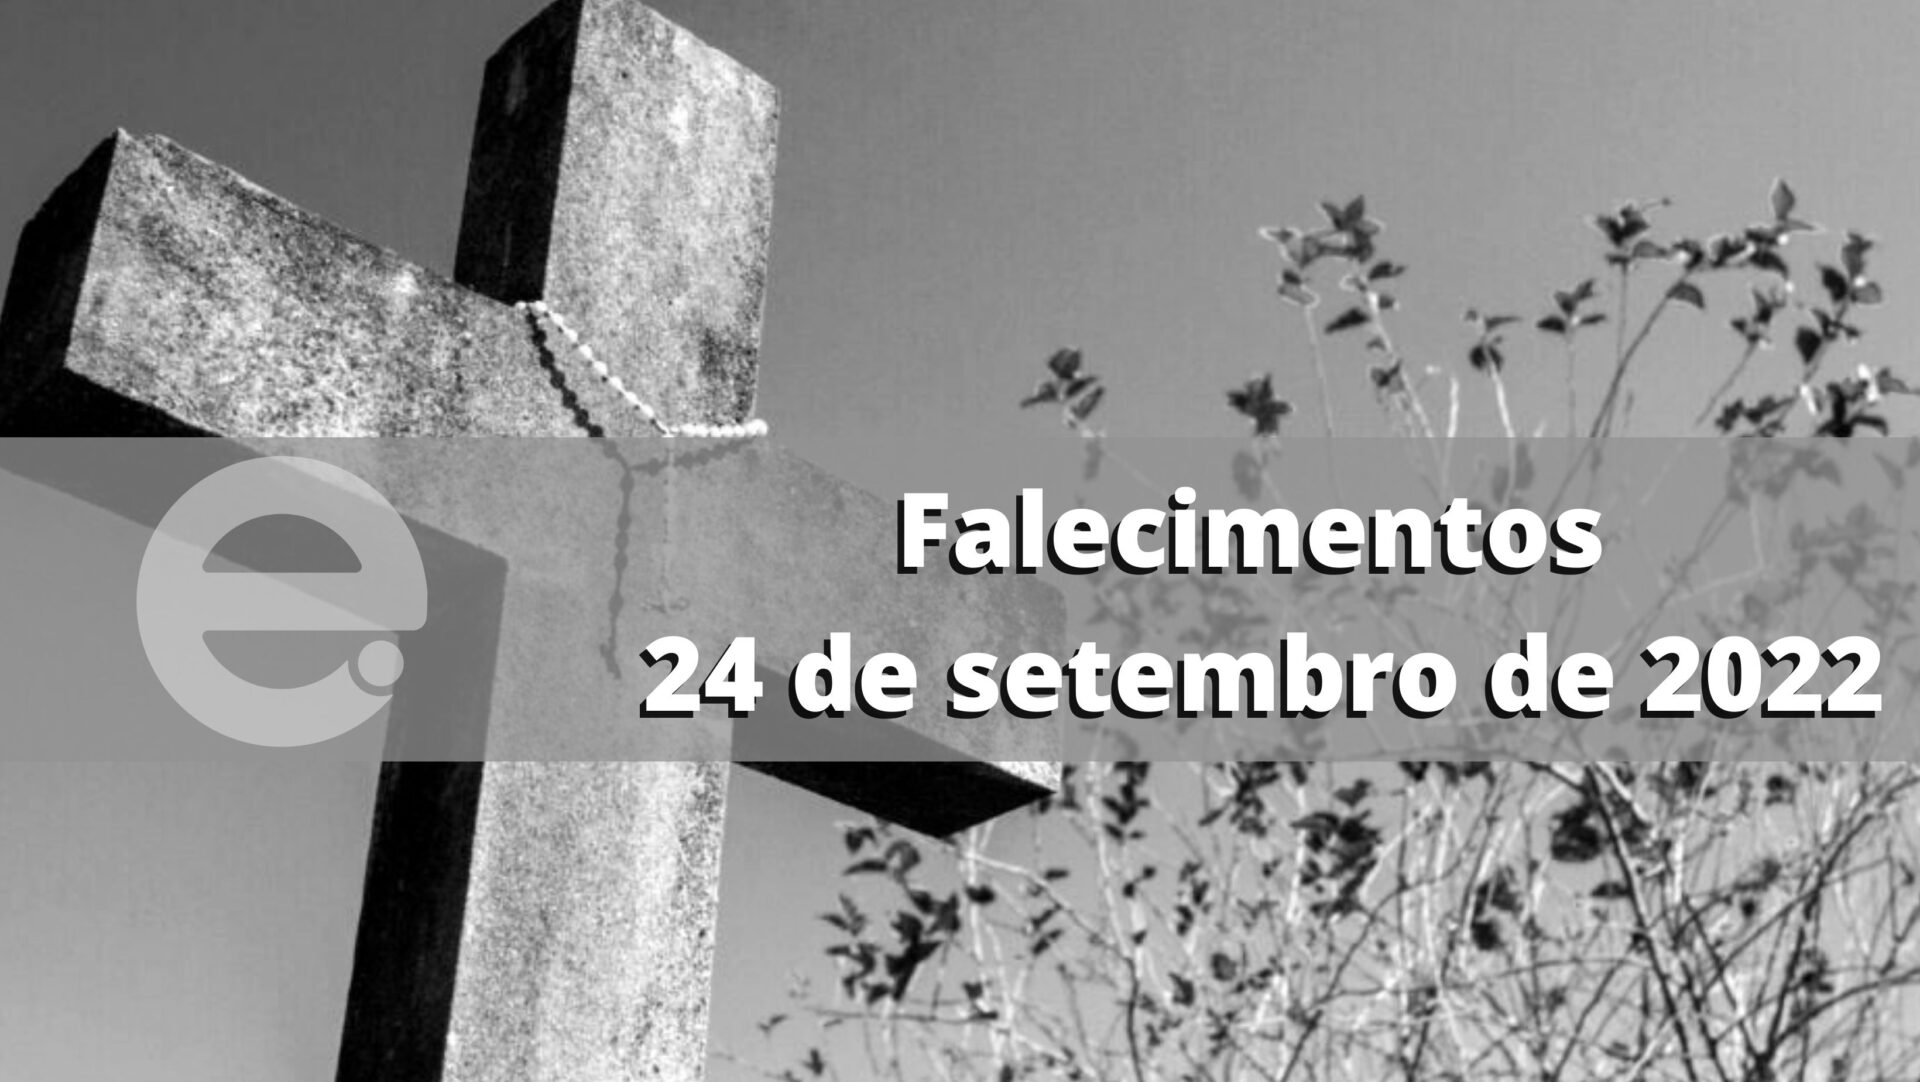 Confira os falecimentos deste sábado, 24 de setembro de 2022, em Limeira